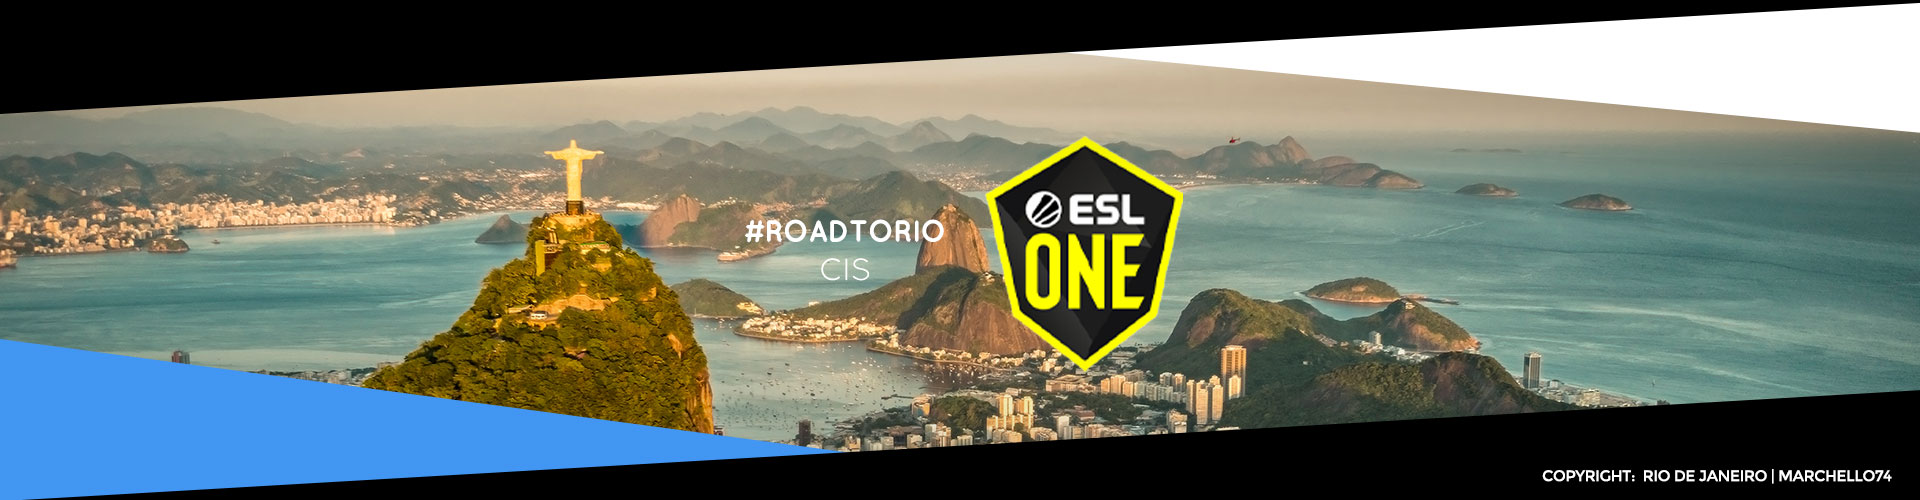 Eventsida för CIS-regionens ESL One: Road to Rio